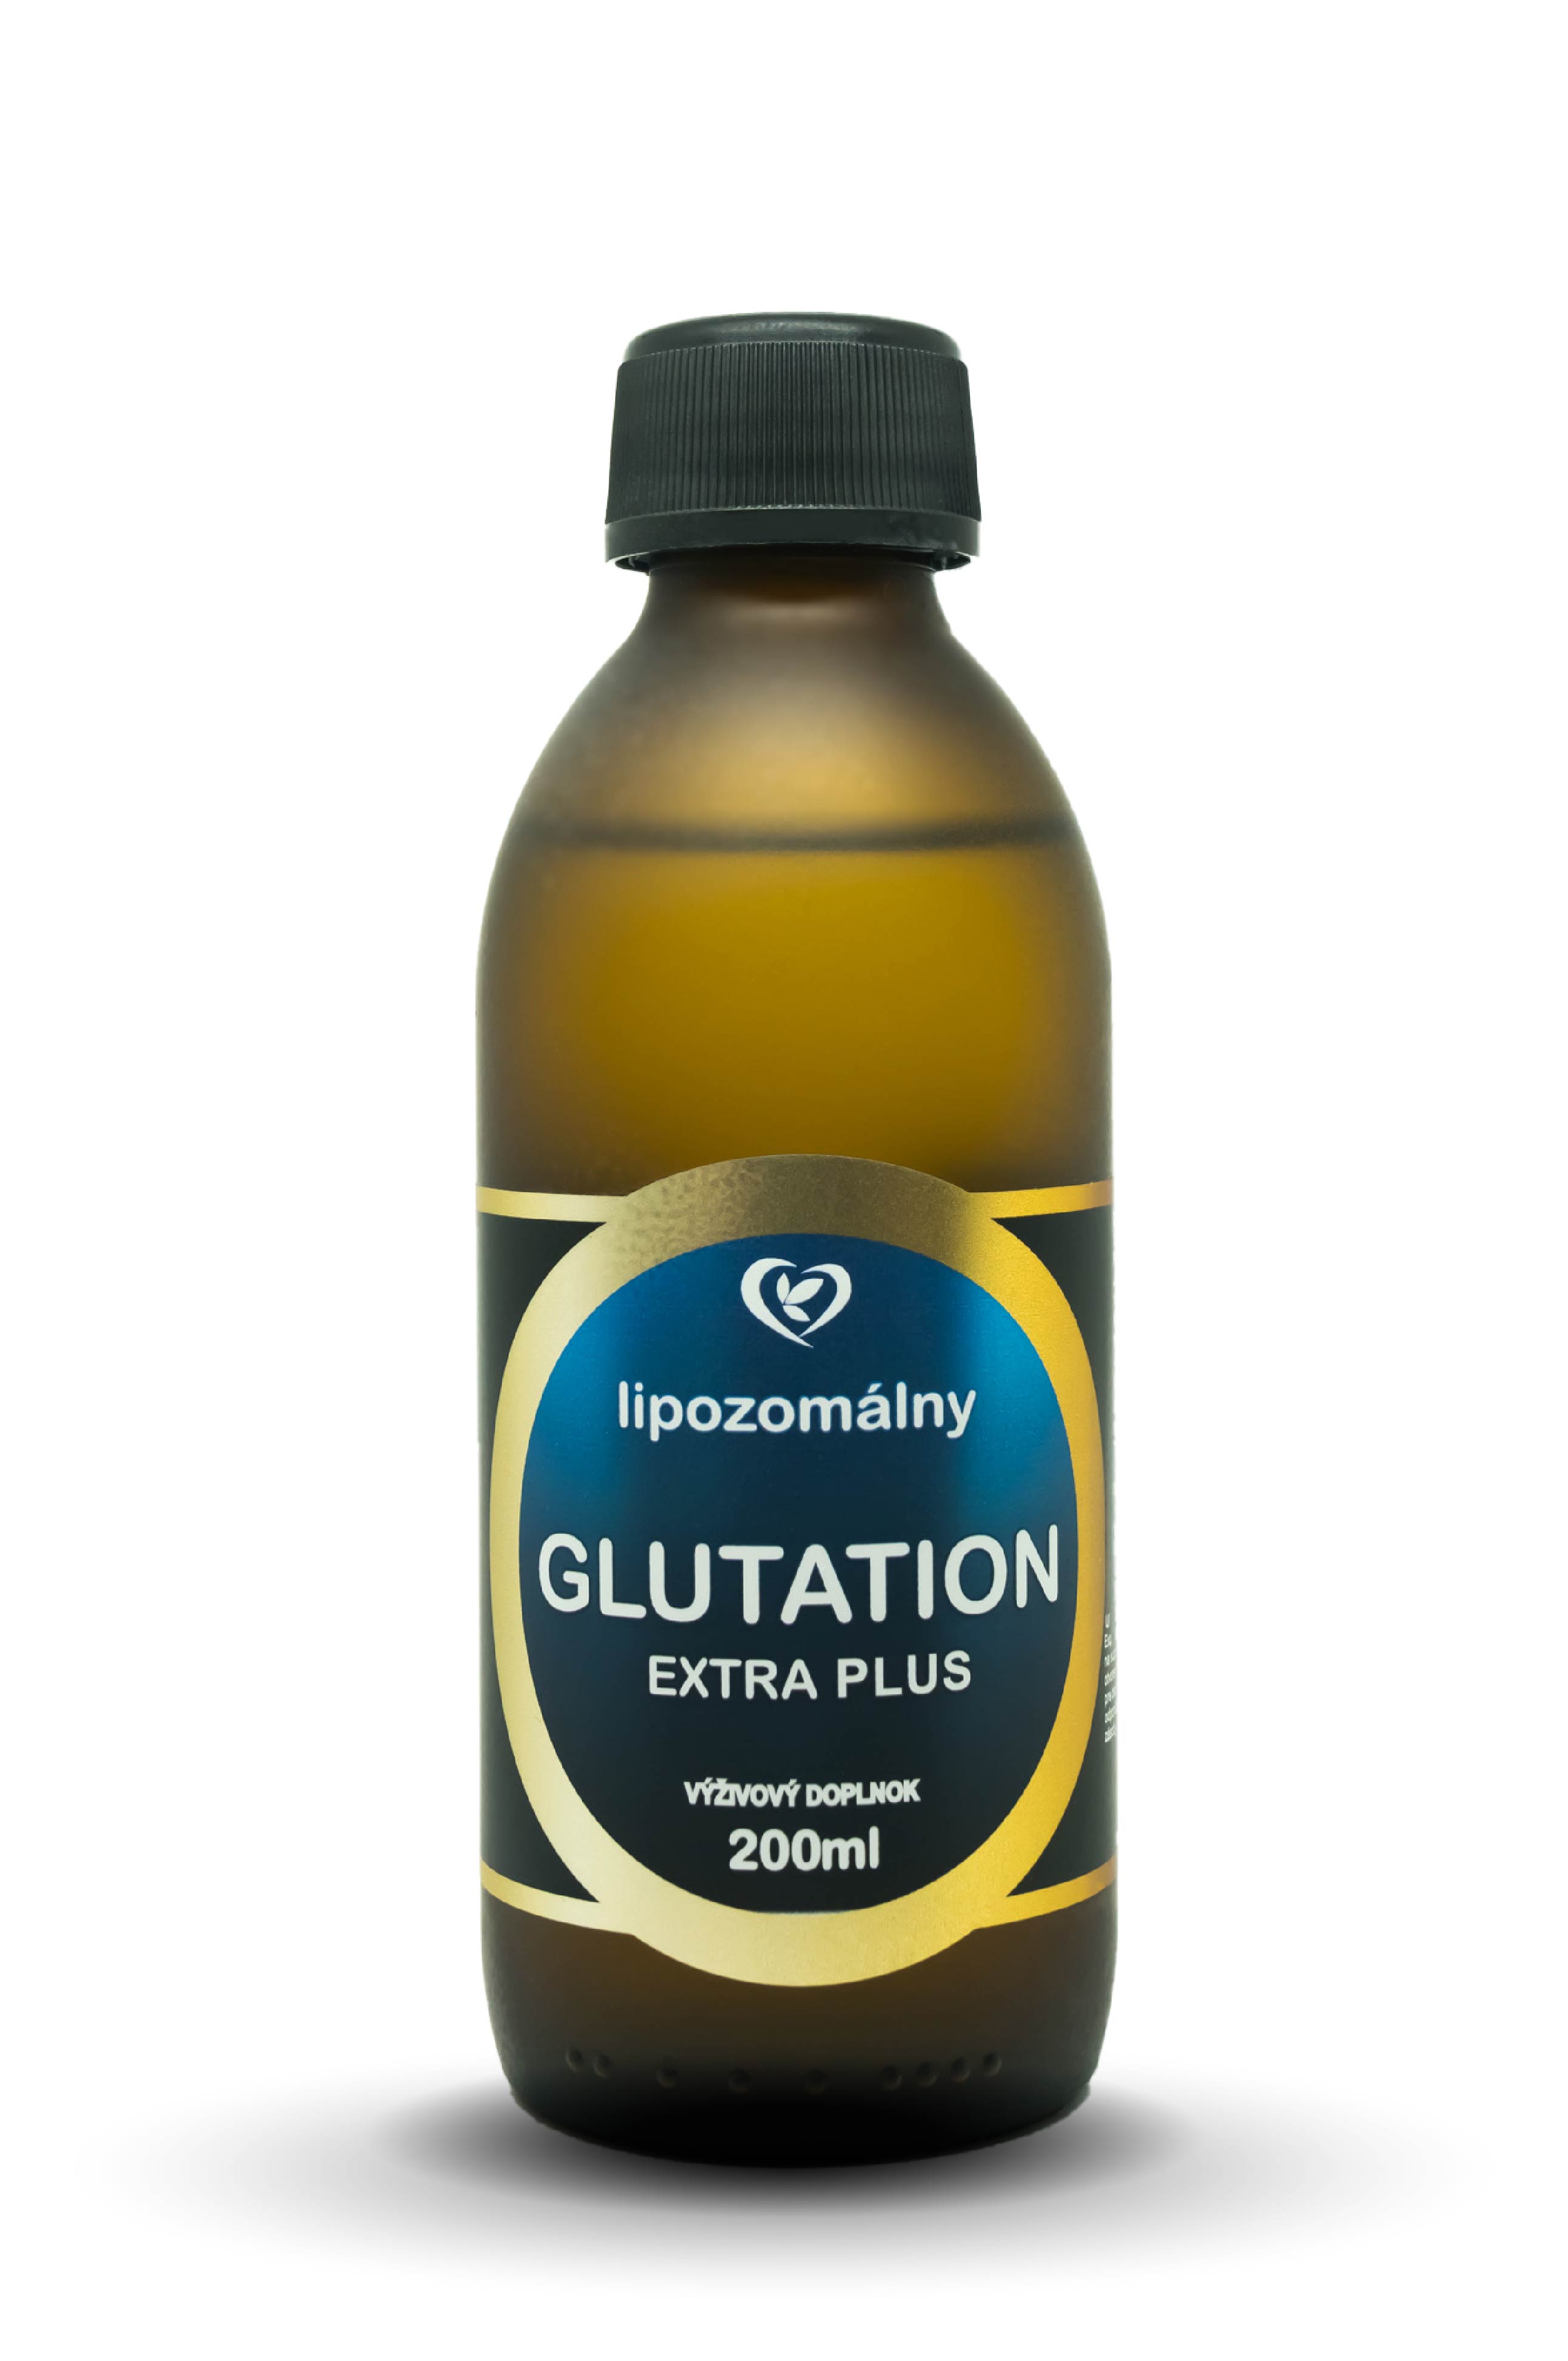 Glutatión je hlavný vnútorný antioxidant a je nevyhnutne potrebný pre každú bunku nášho tela k svojej funkčnosti. Náš organizmus si...